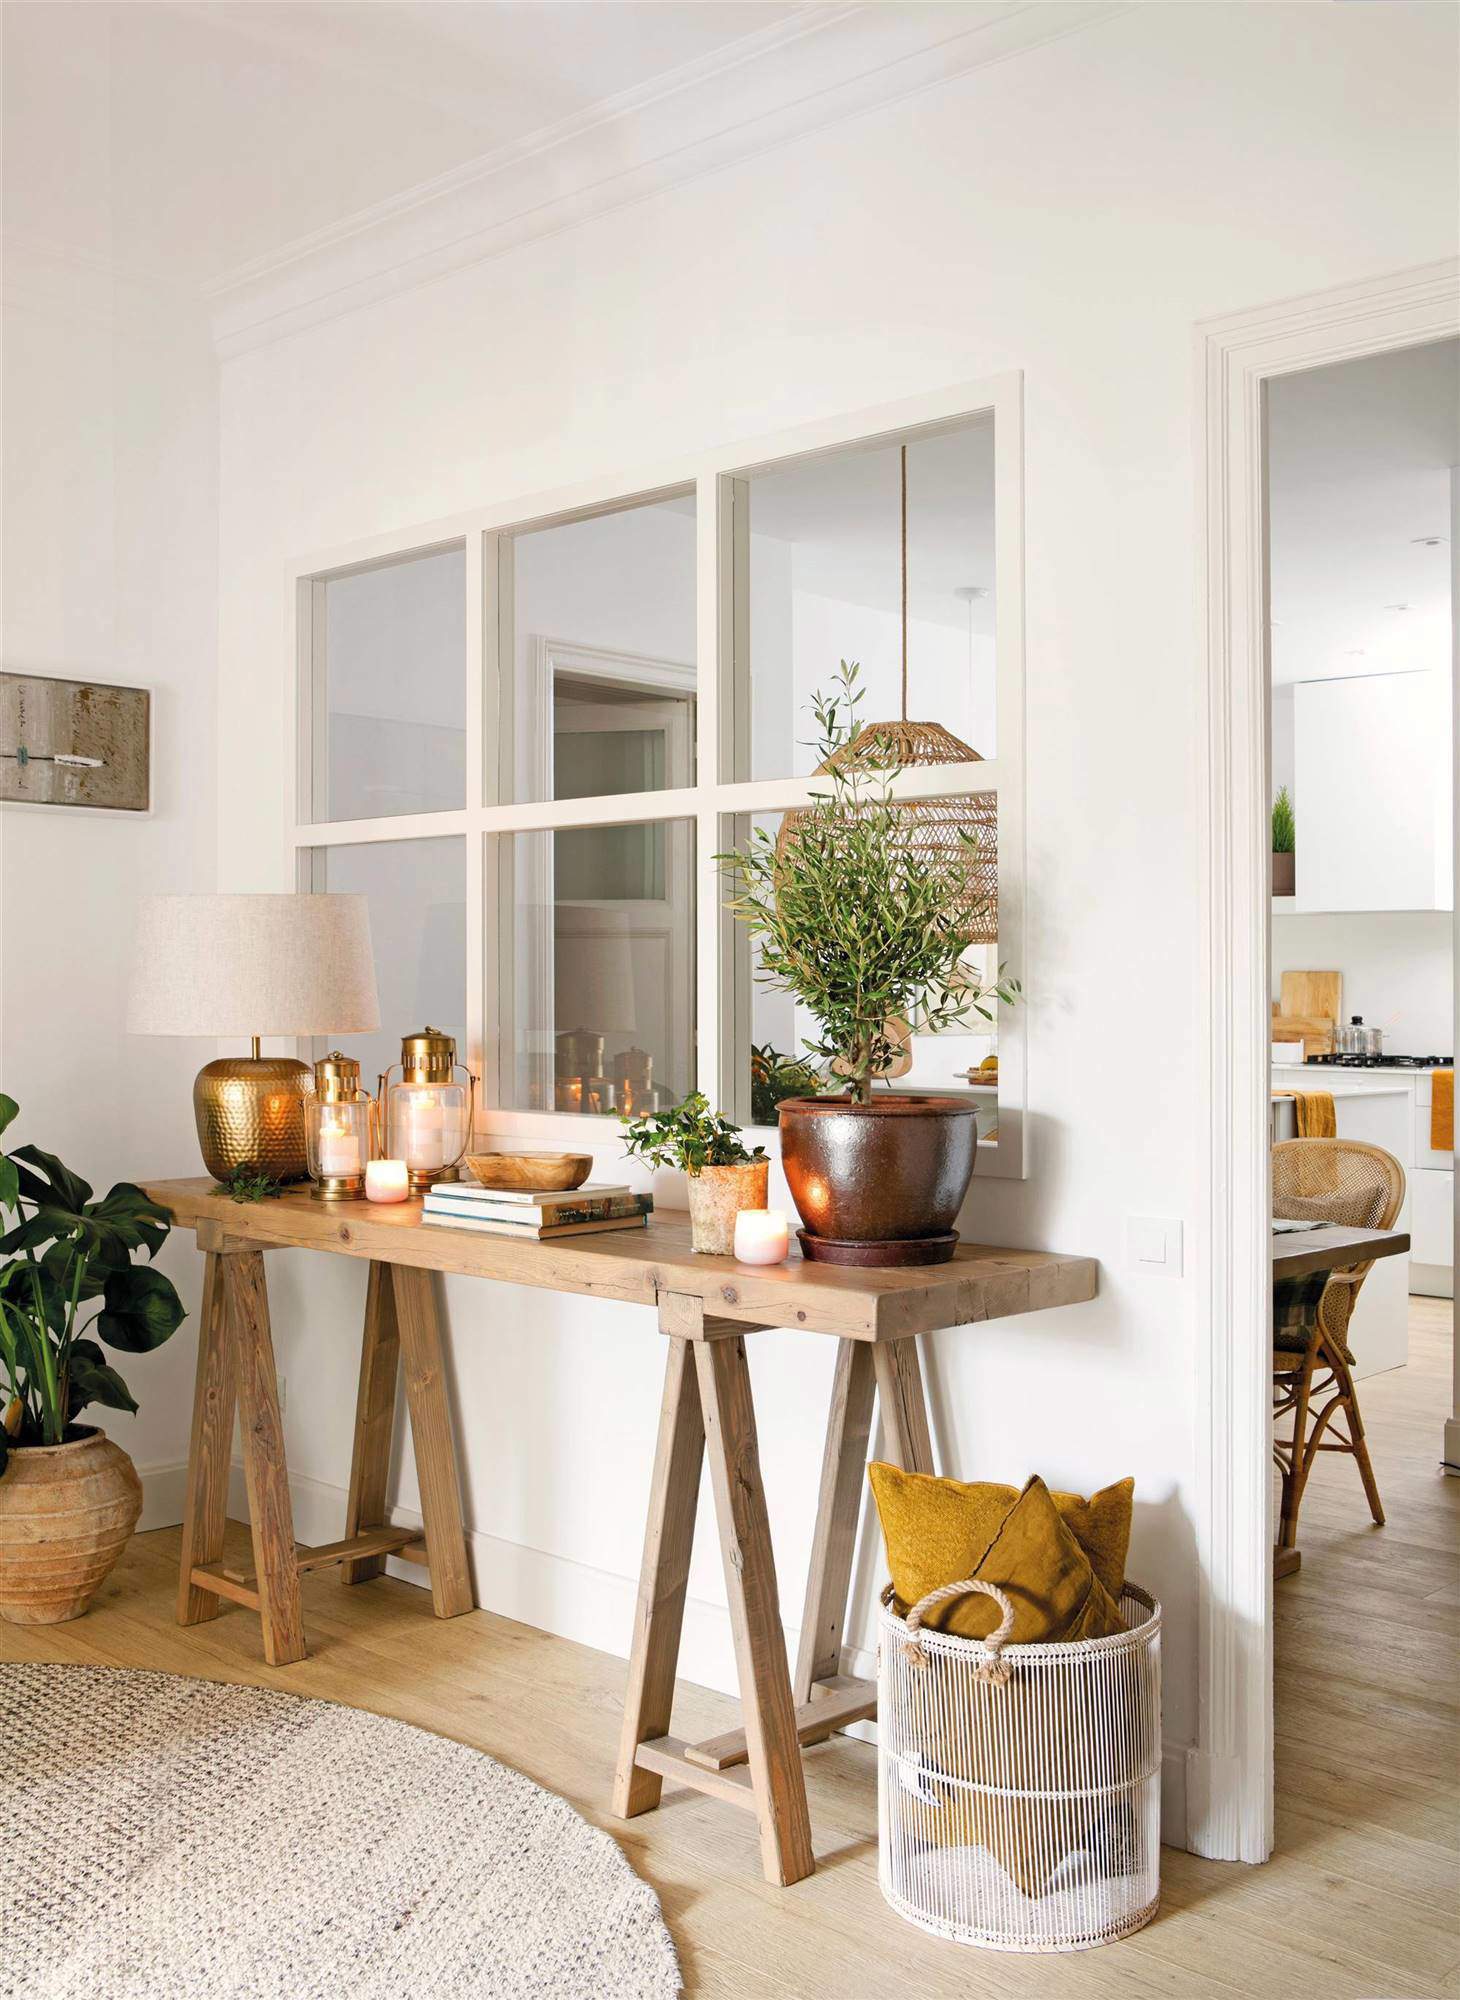 Recibidor minimalista con mesa auxiliar de madera, elementos decorativos en dorado y plantas.